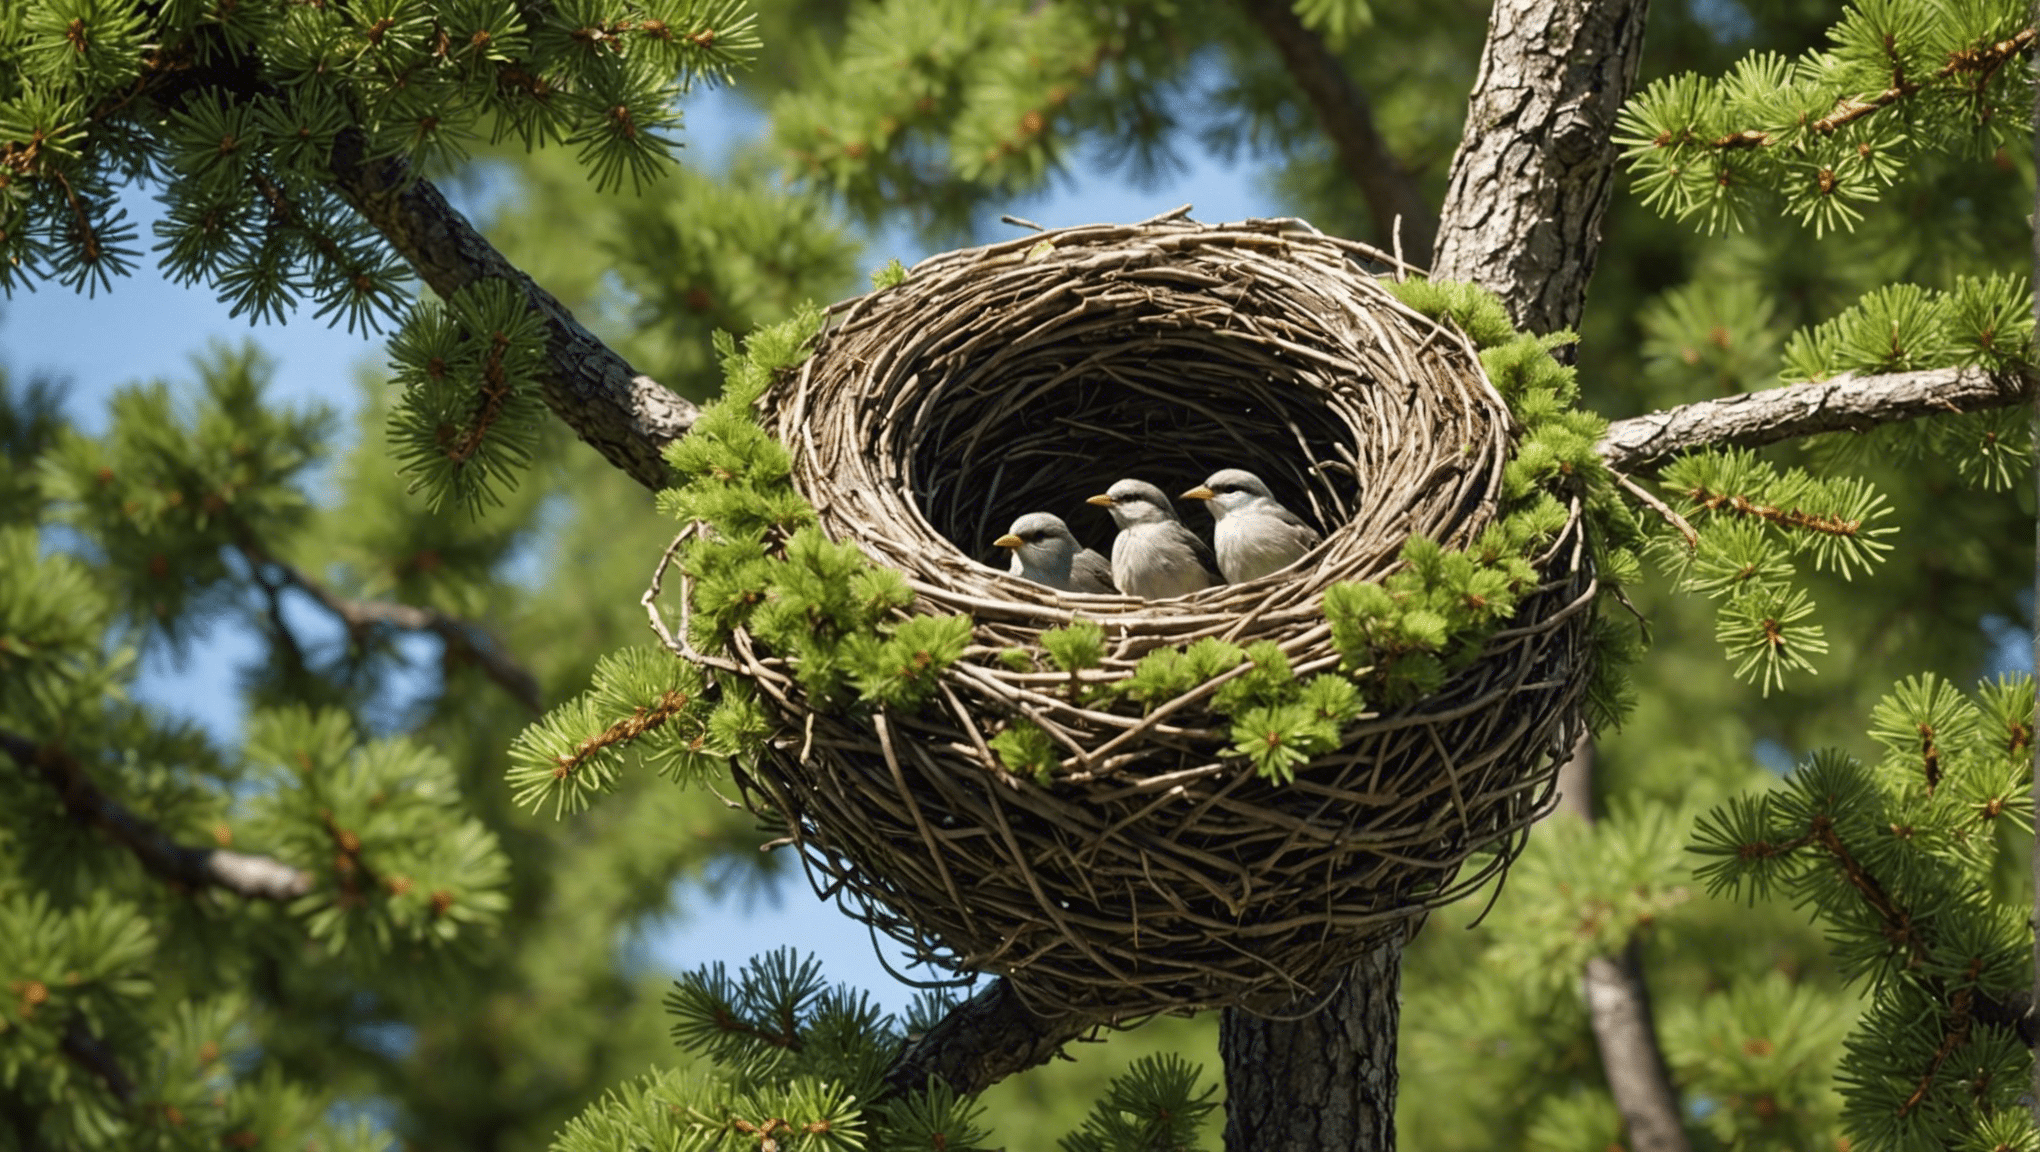 scopri cosa rende l'abete rosso nido d'uccello così unico e attraente in questo articolo informativo. conoscere le sue caratteristiche distintive e le caratteristiche che lo distinguono dagli altri alberi.